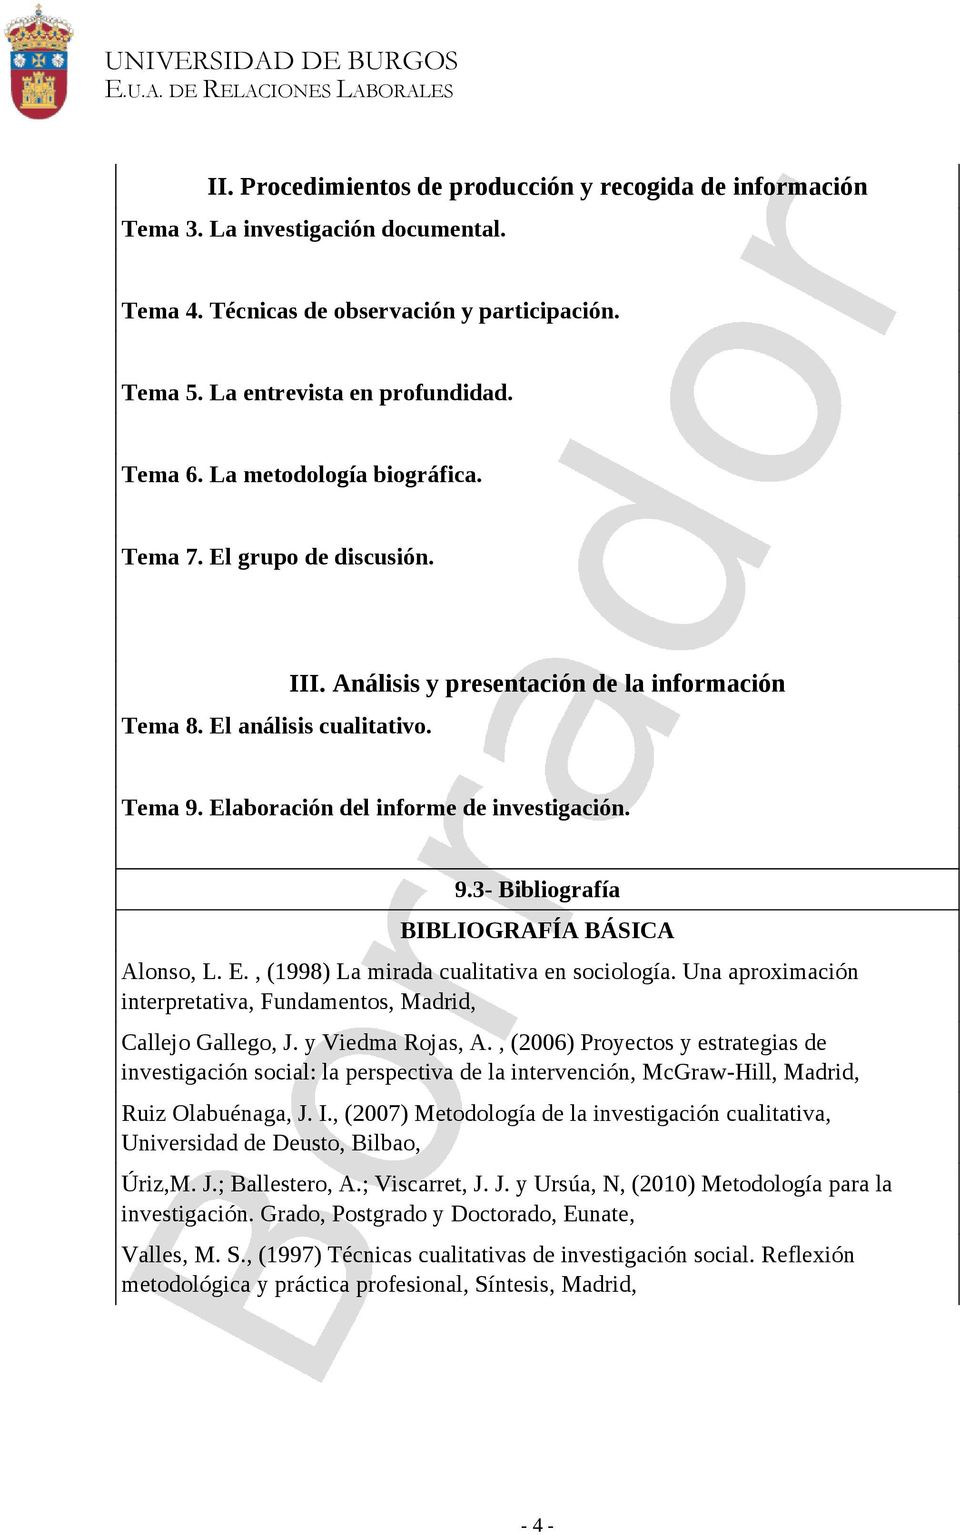 E., (1998) La mirada cualitativa en sociología. Una aproximación interpretativa, Fundamentos, Madrid, Callejo Gallego, J. y Viedma Rojas, A.